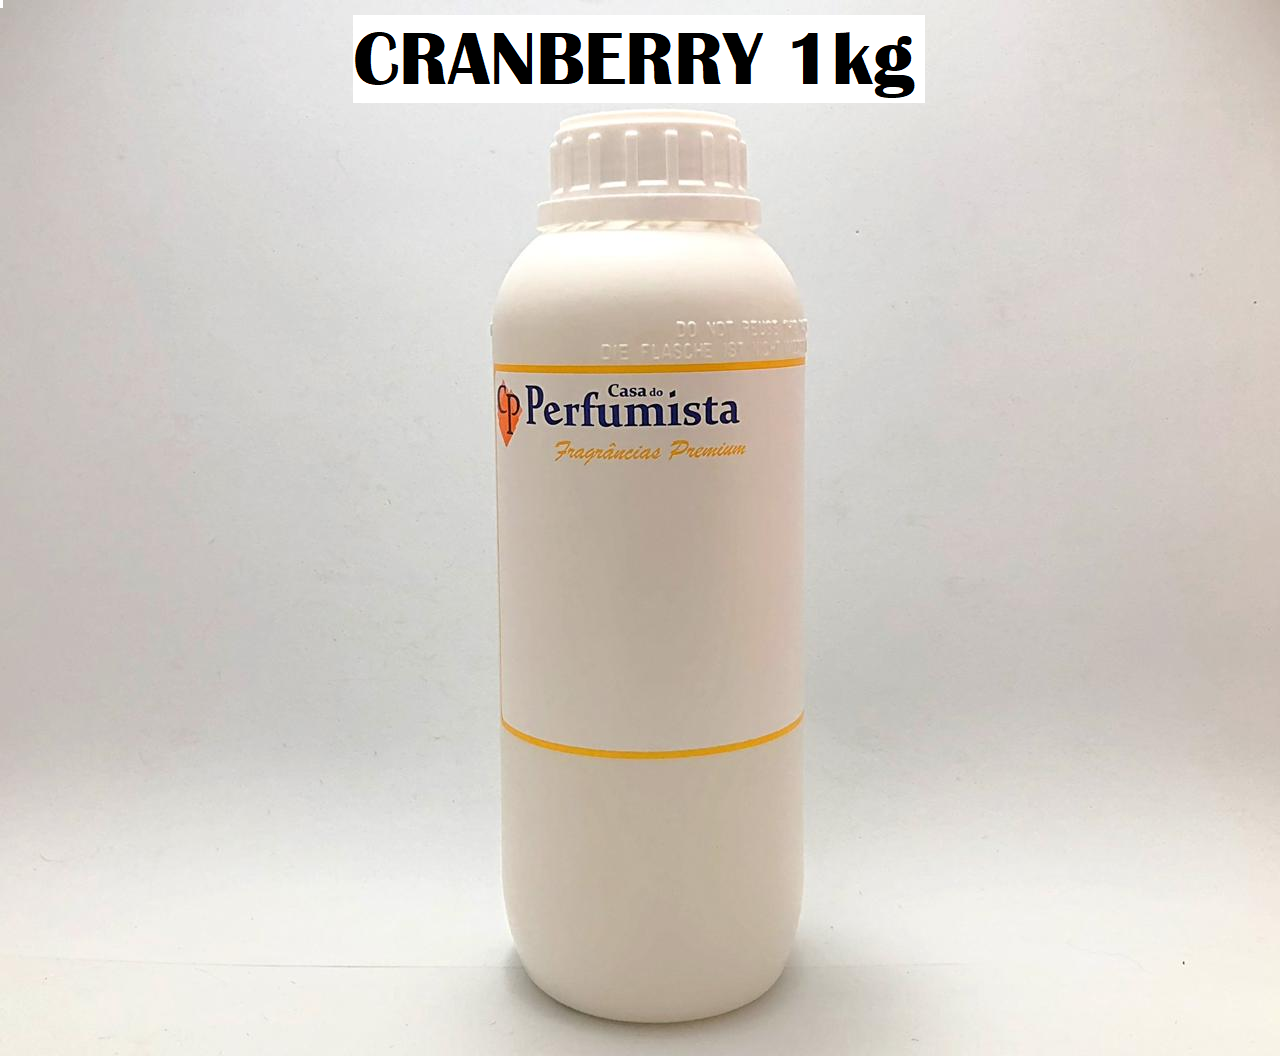 CRANBERRY - 1kg